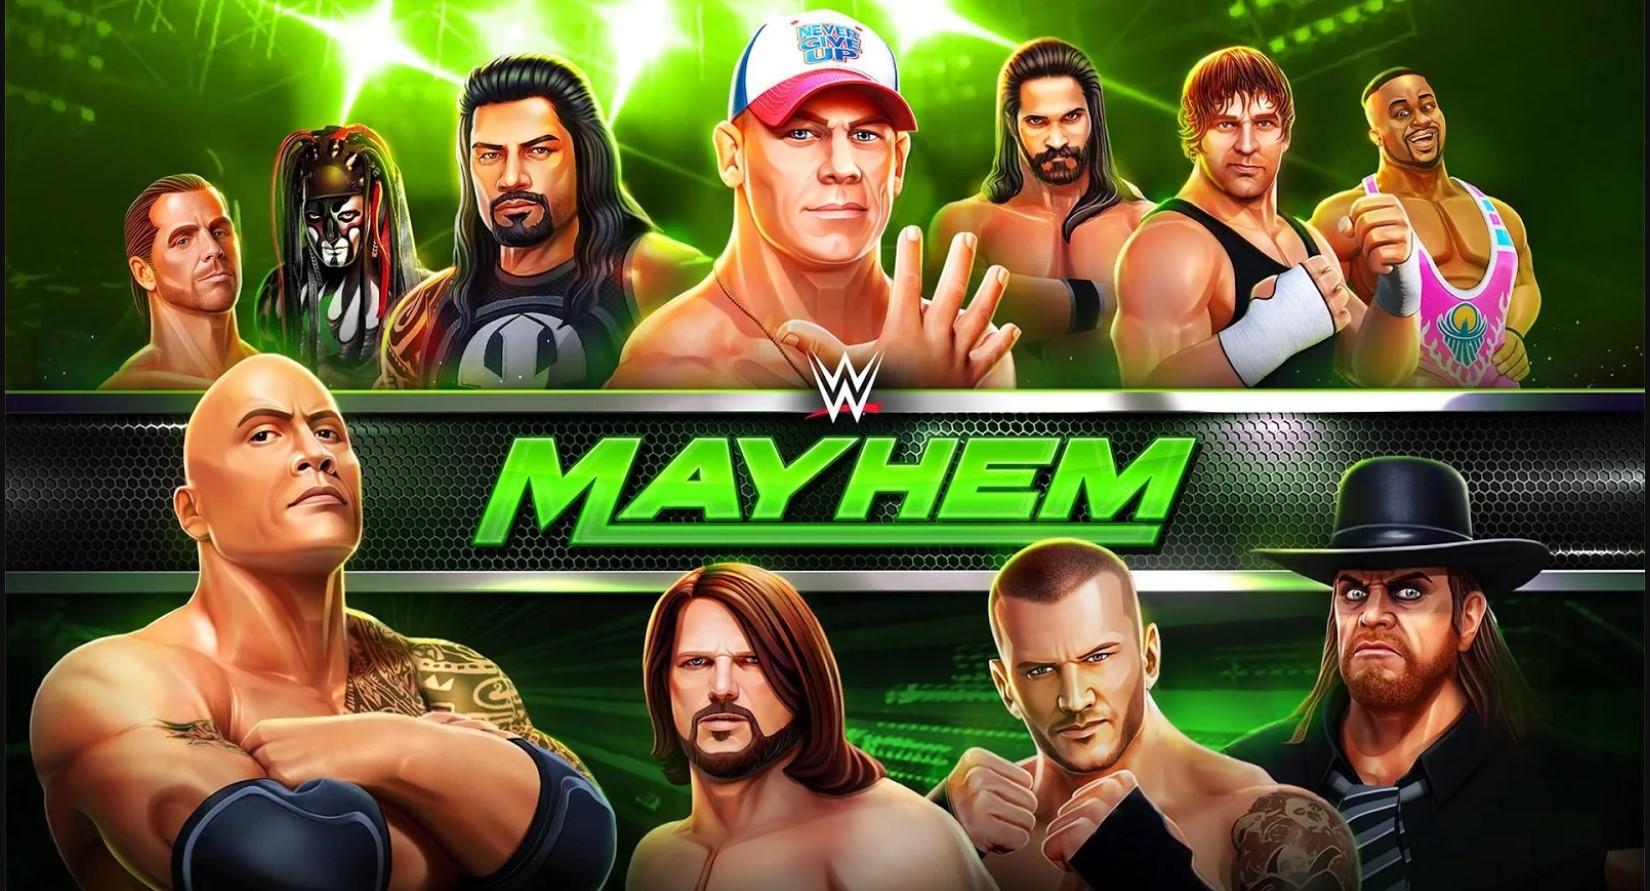 Unfortunately, WWE Mayhem has stopped error